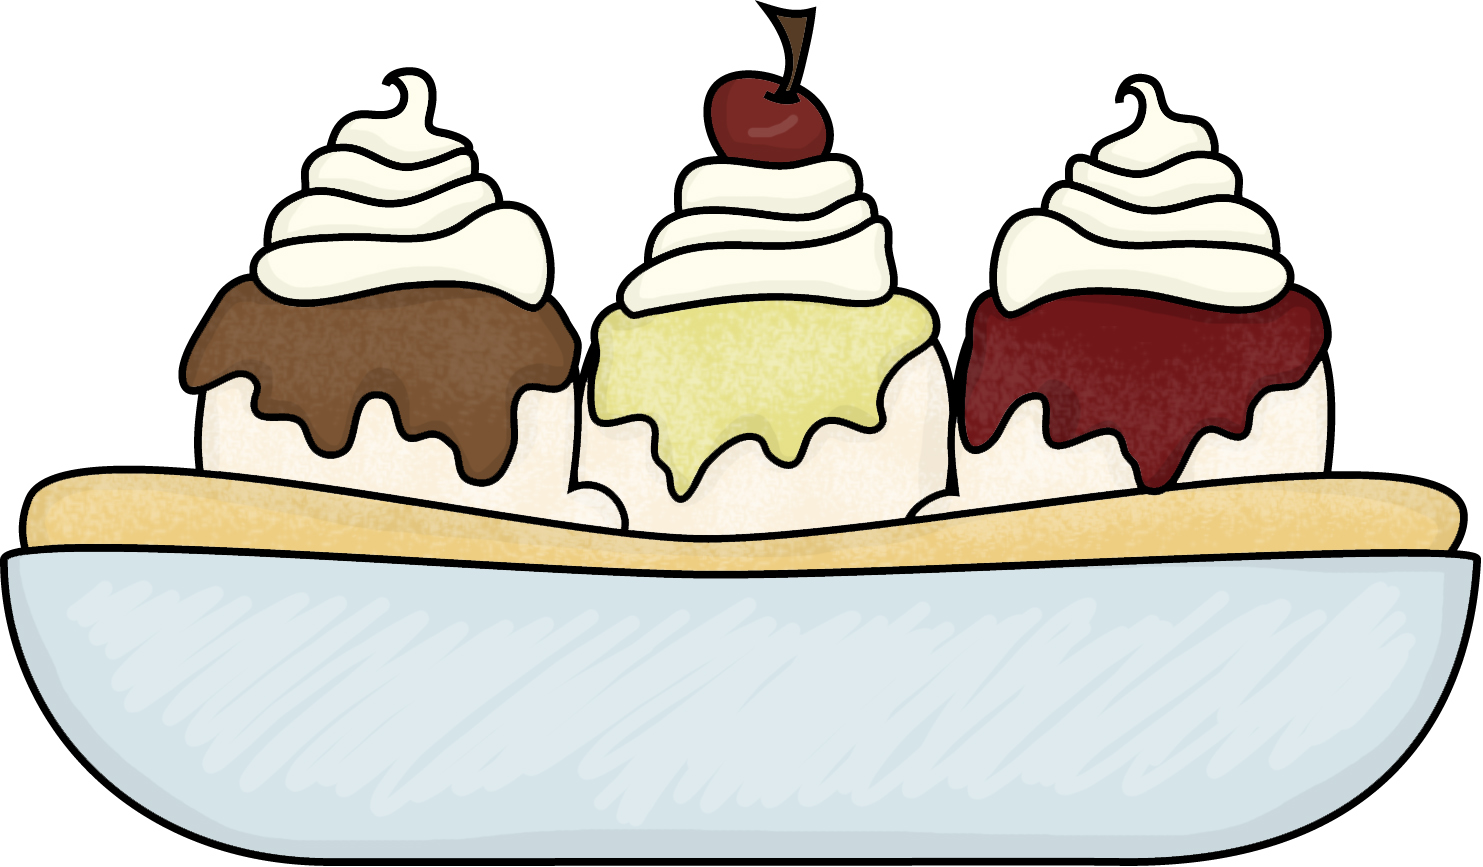 Ice Cream Sundae Clip Art | Clipart Panda - Free Clipart Images